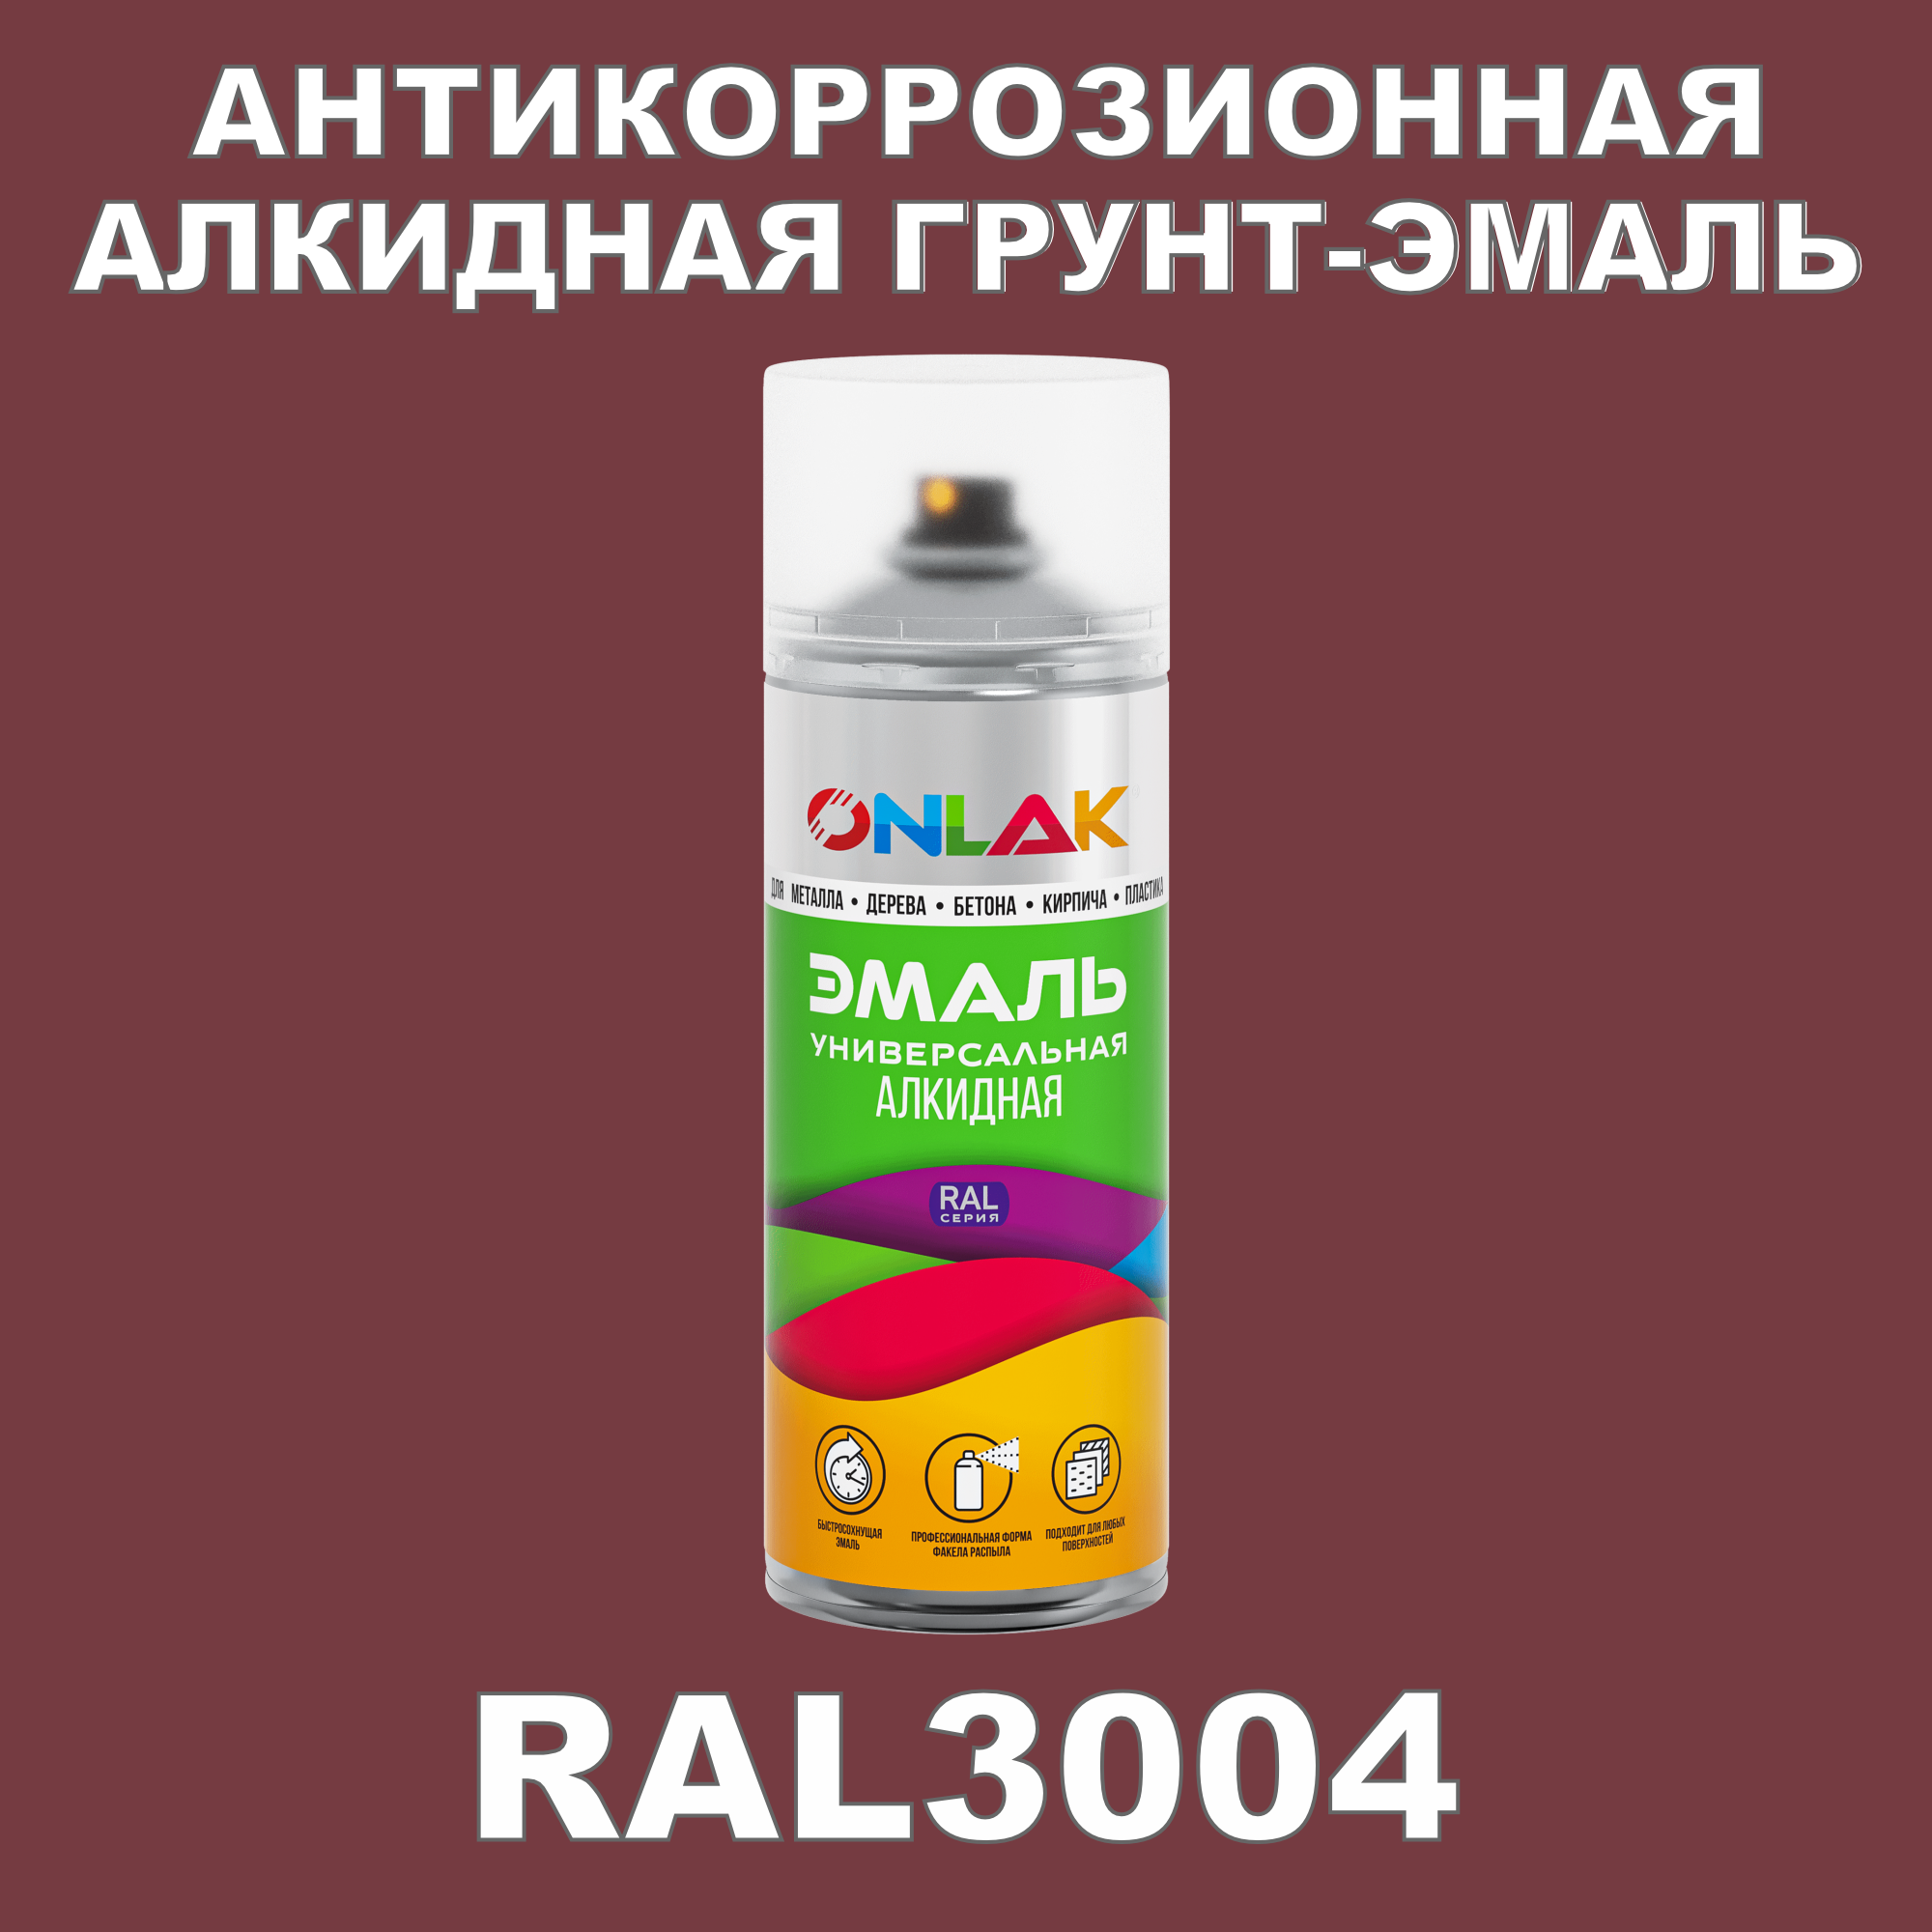 Антикоррозионная грунт-эмаль ONLAK RAL3004 полуматовая для металла и защиты от ржавчины антикоррозионная грунт эмаль onlak ral3004 полуматовая для металла и защиты от ржавчины